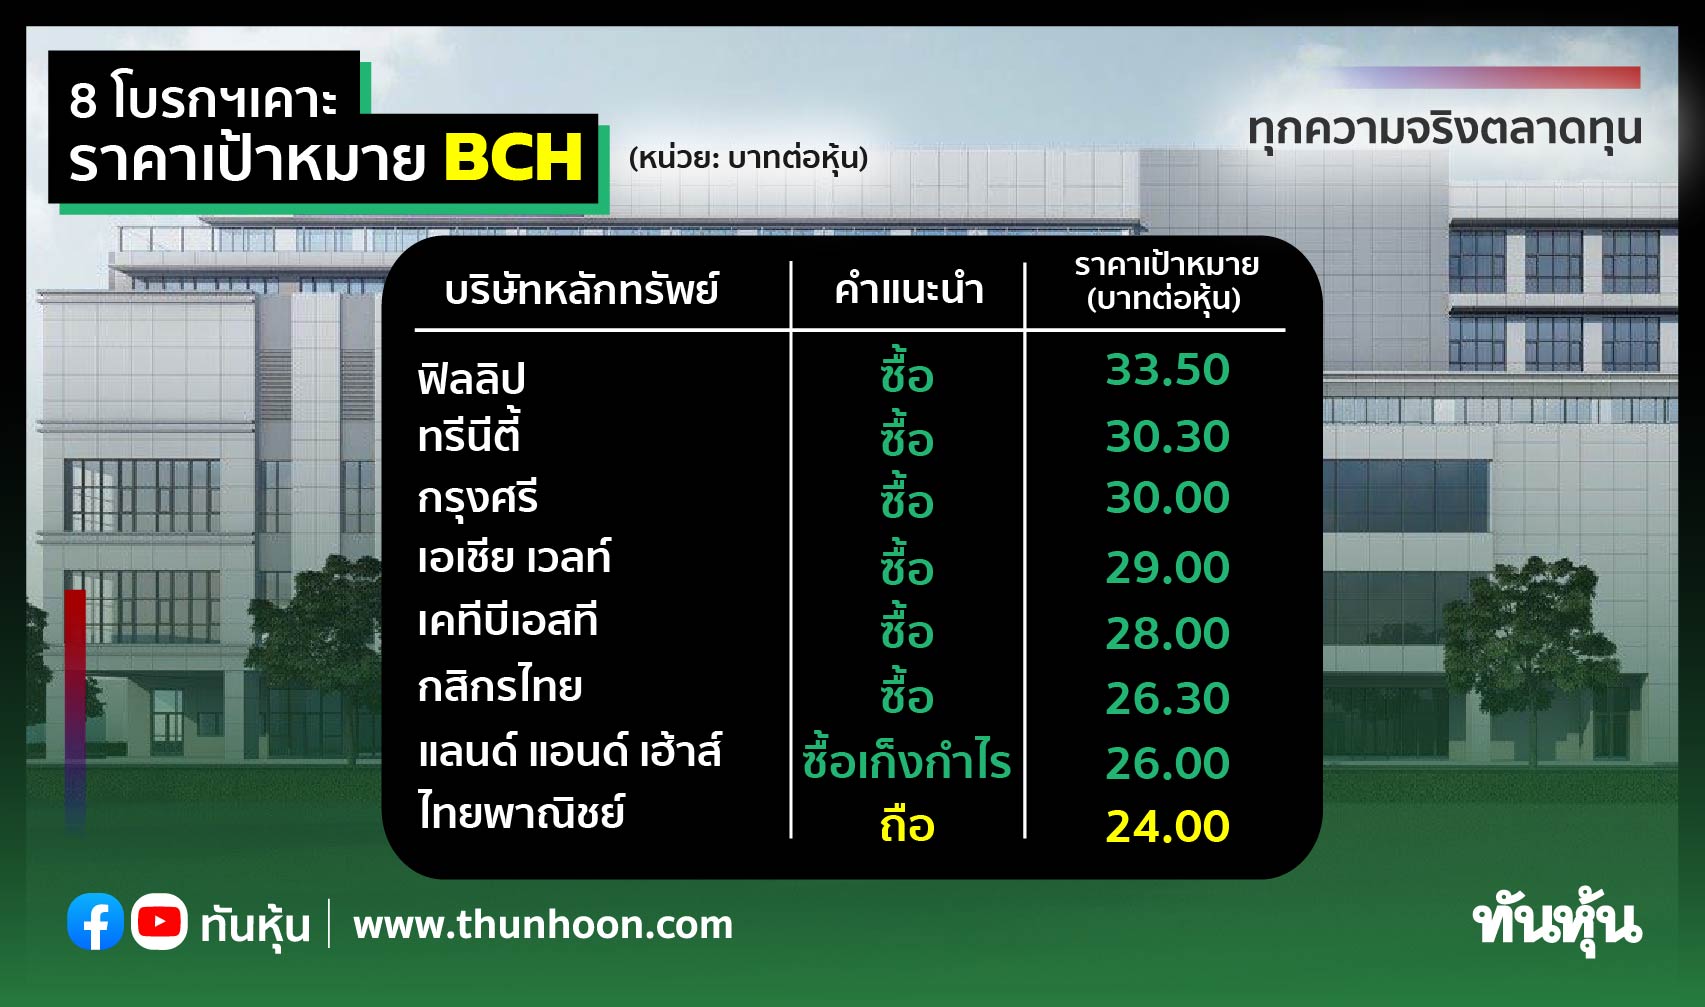 8 โบรกฯ เคาะราคาเป้าหมาย Bch - Thunhoon